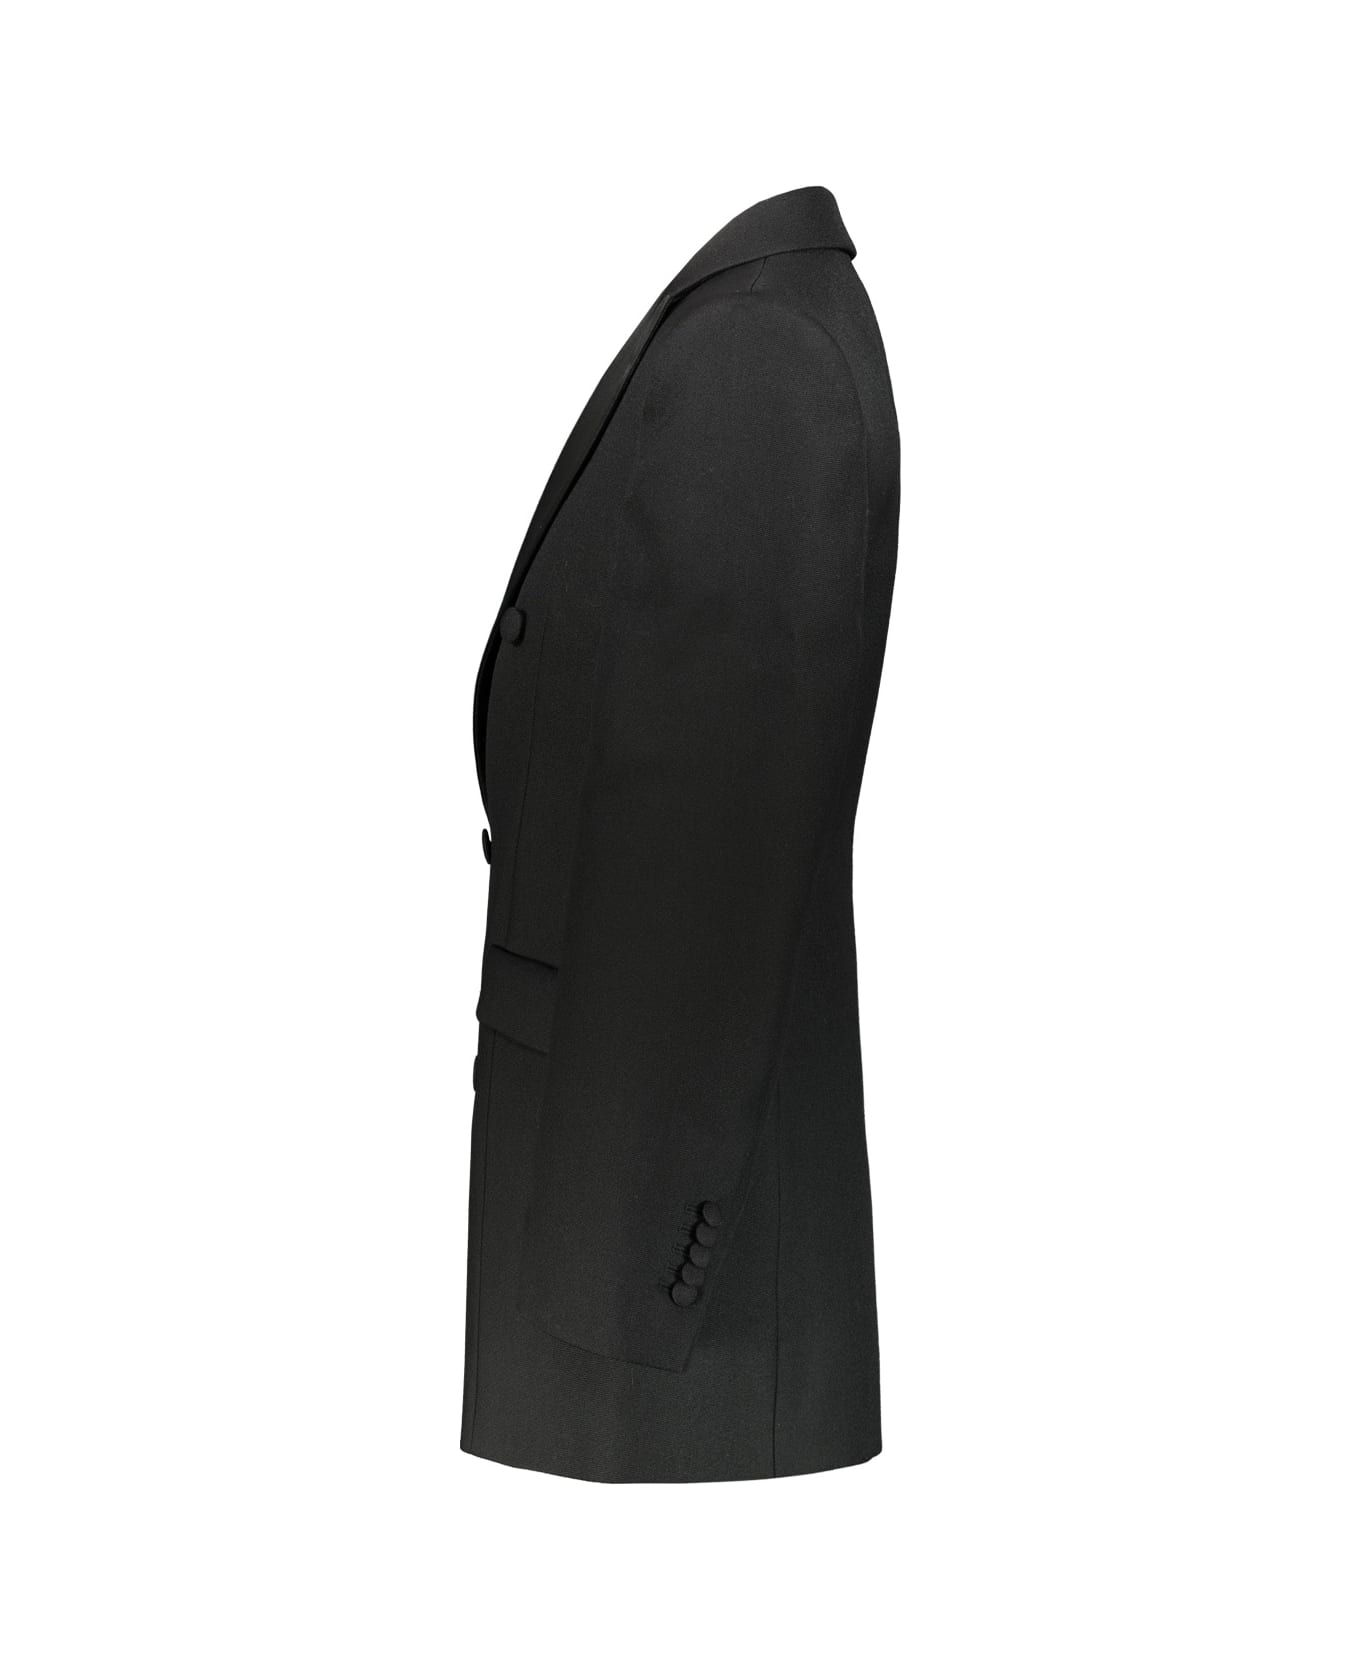 WARDROBE.NYC Sculptured Blazer Dress - Blk Black コート